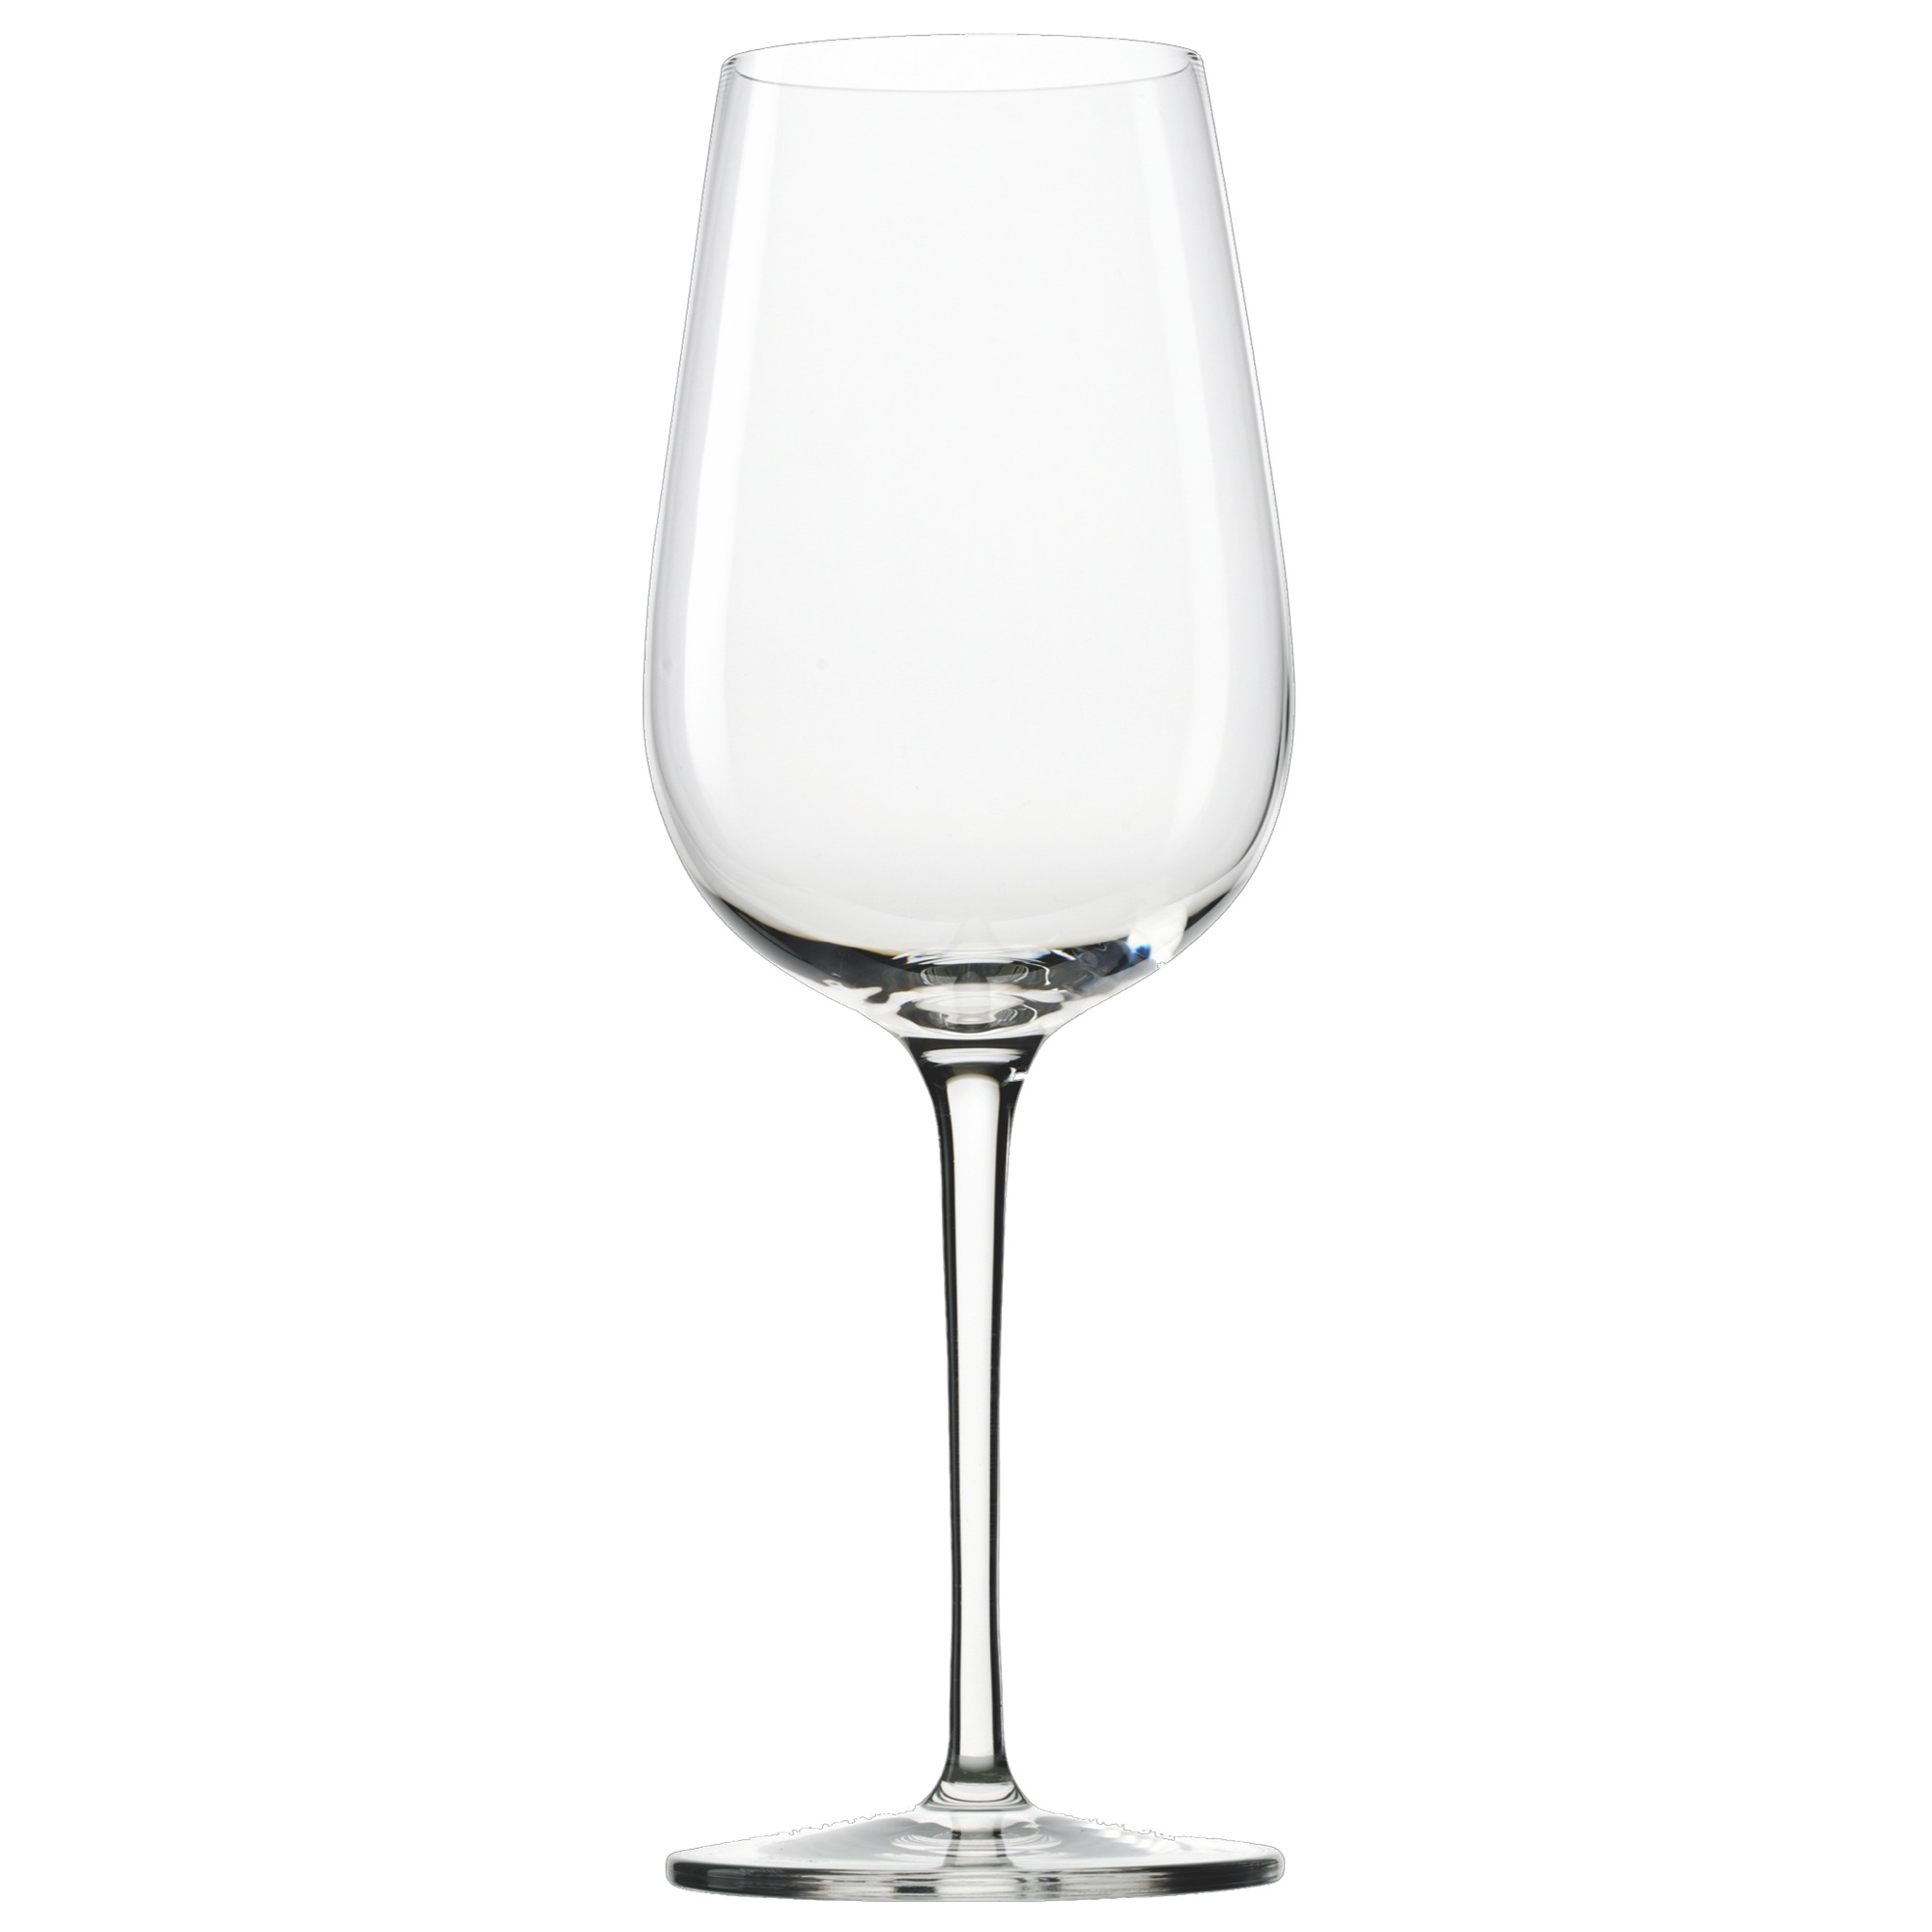 Grandezza pohár na červ.víno 430ml 1/8